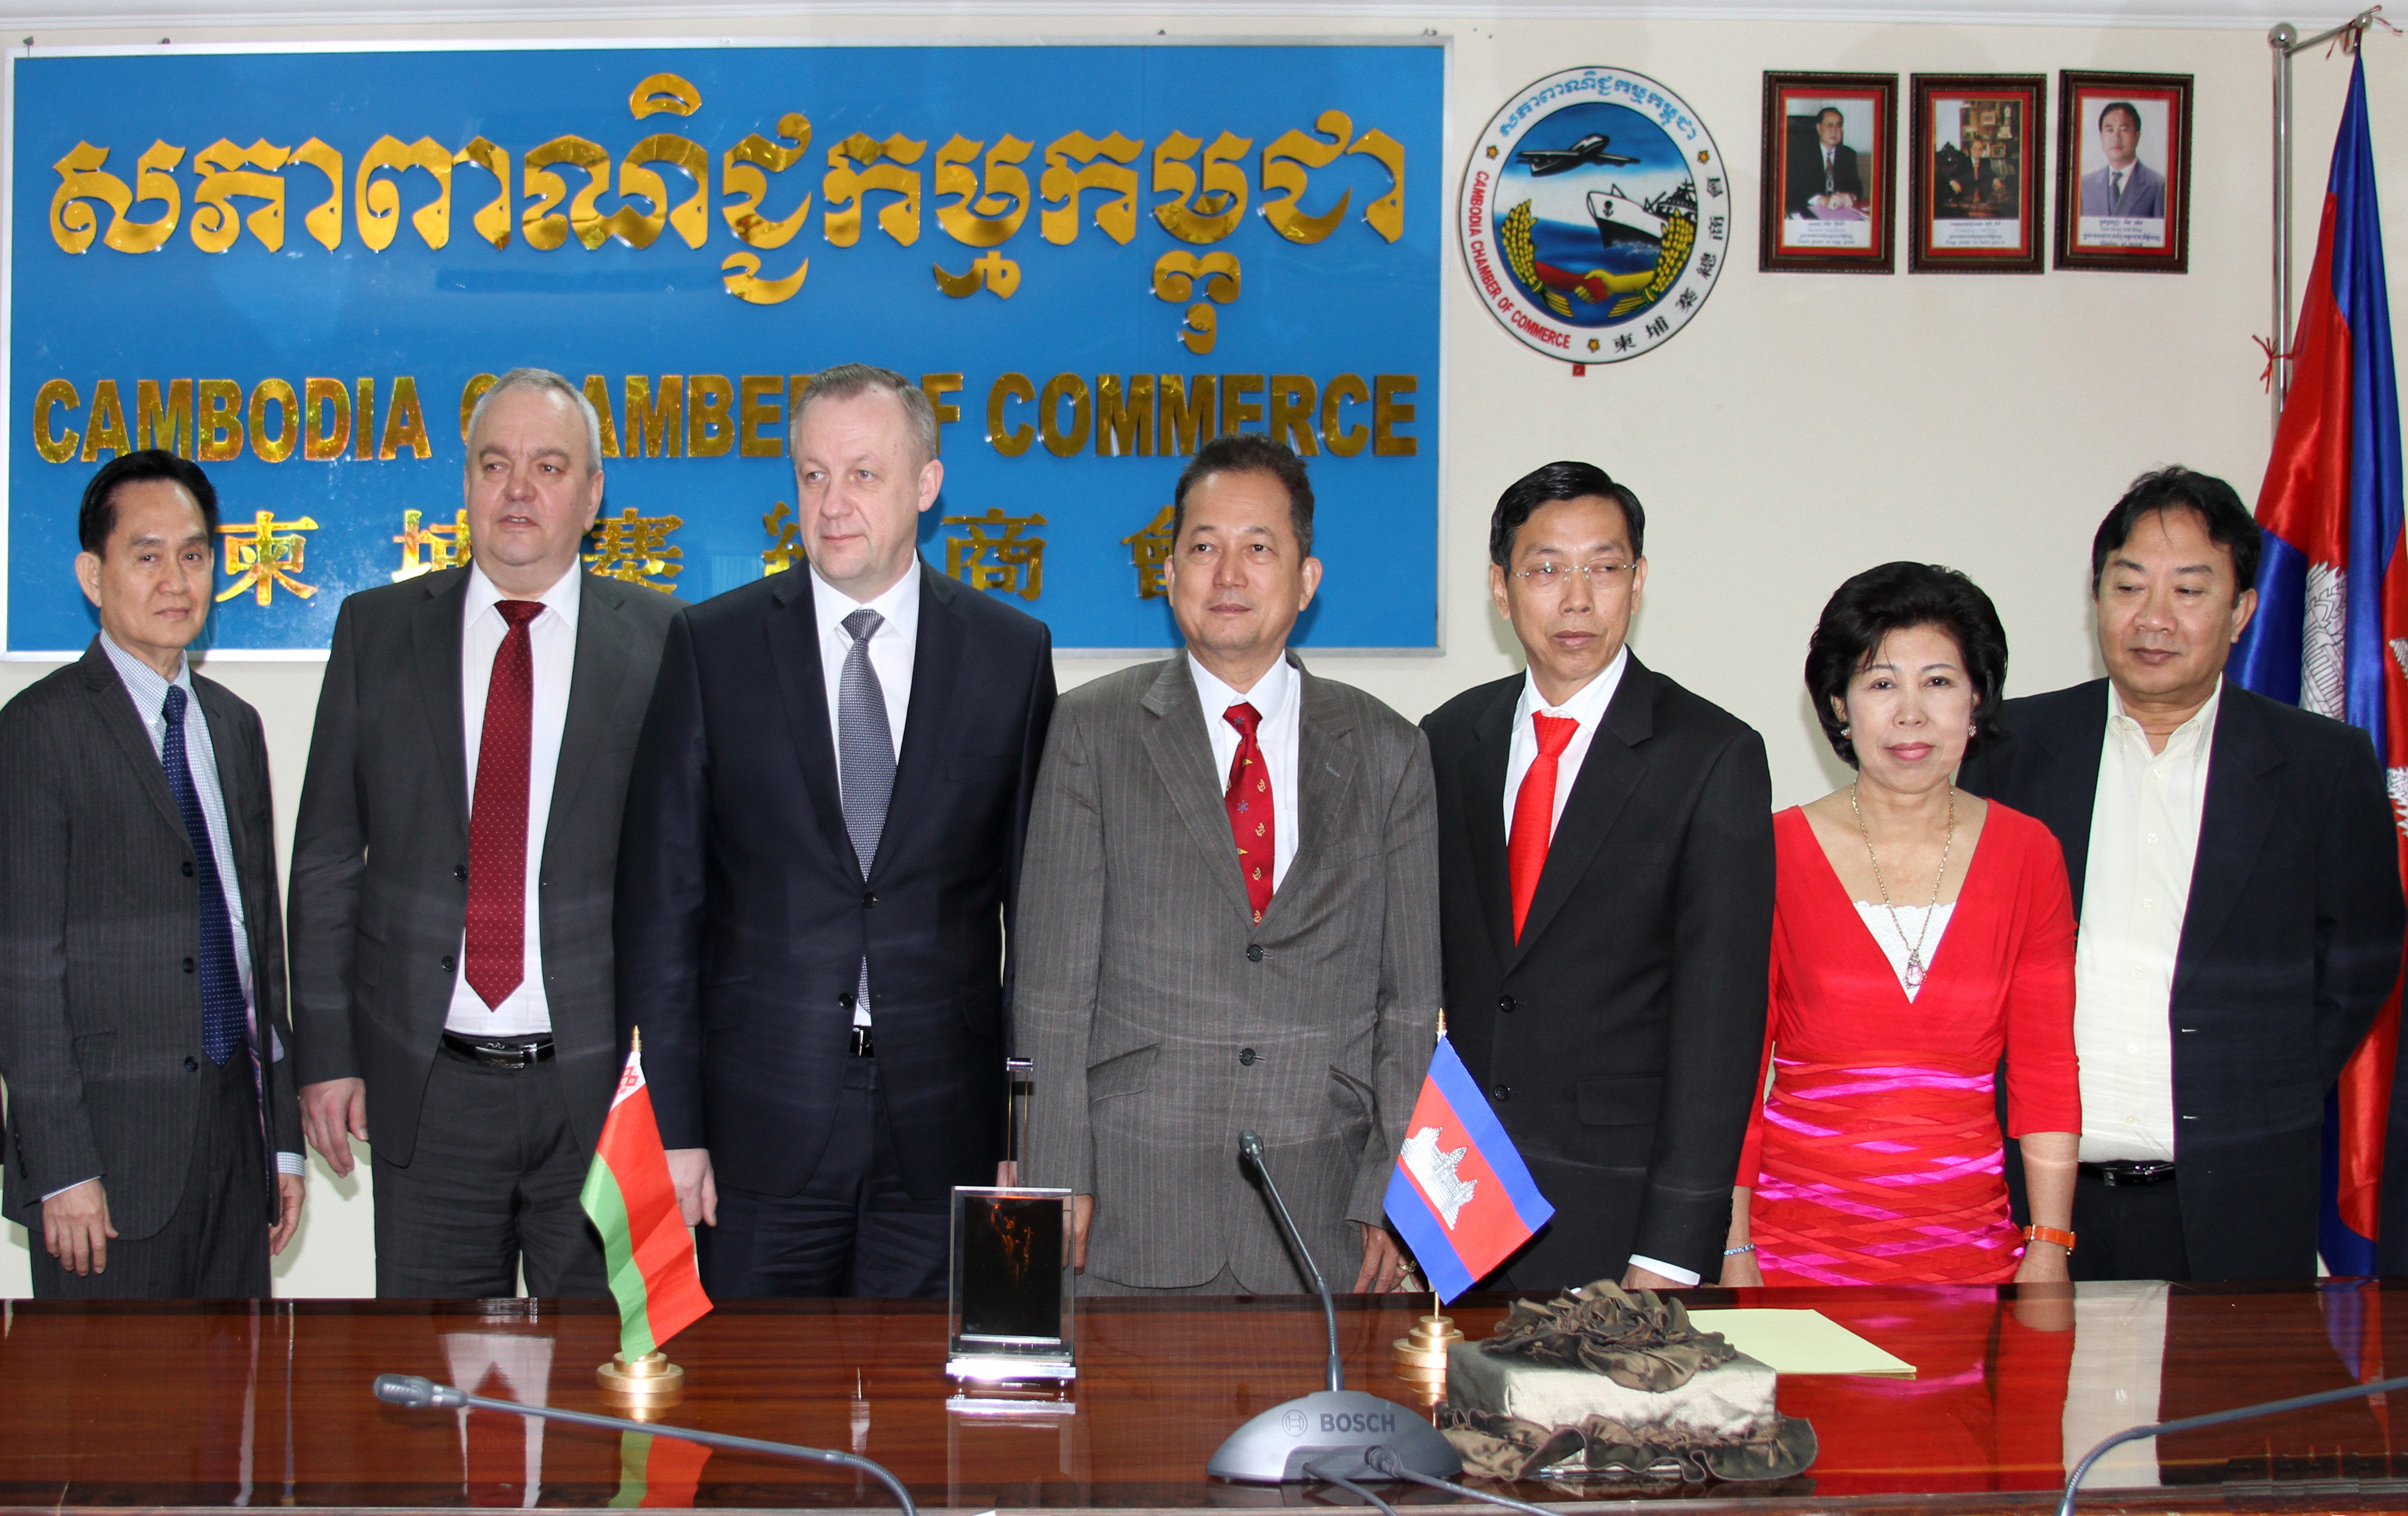 Белорусская торгово-промышленная палата и Камбоджийская торговая палата подписали меморандум о взаимопонимании